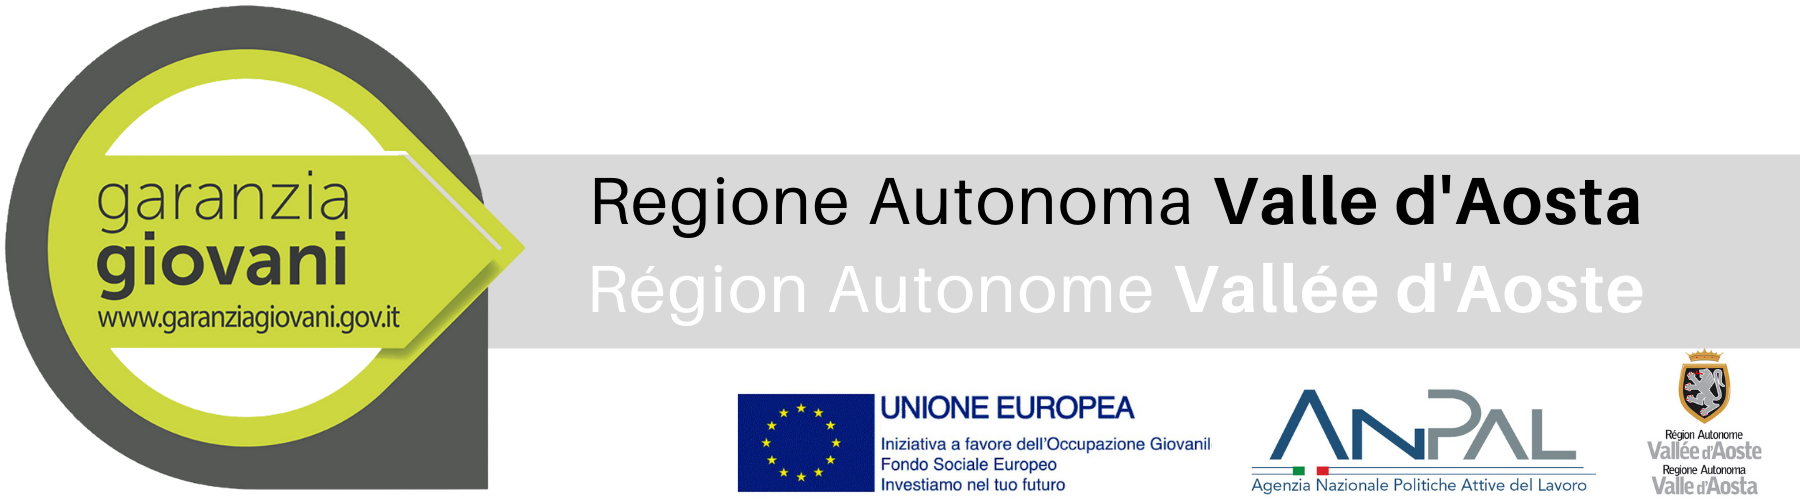 Logo di Garanzia Giovani con indicato il sito internet del programma combinato graficamente con i loghi dell'UE, di ANPAL e della Regione autonoma Valle d'Aosta